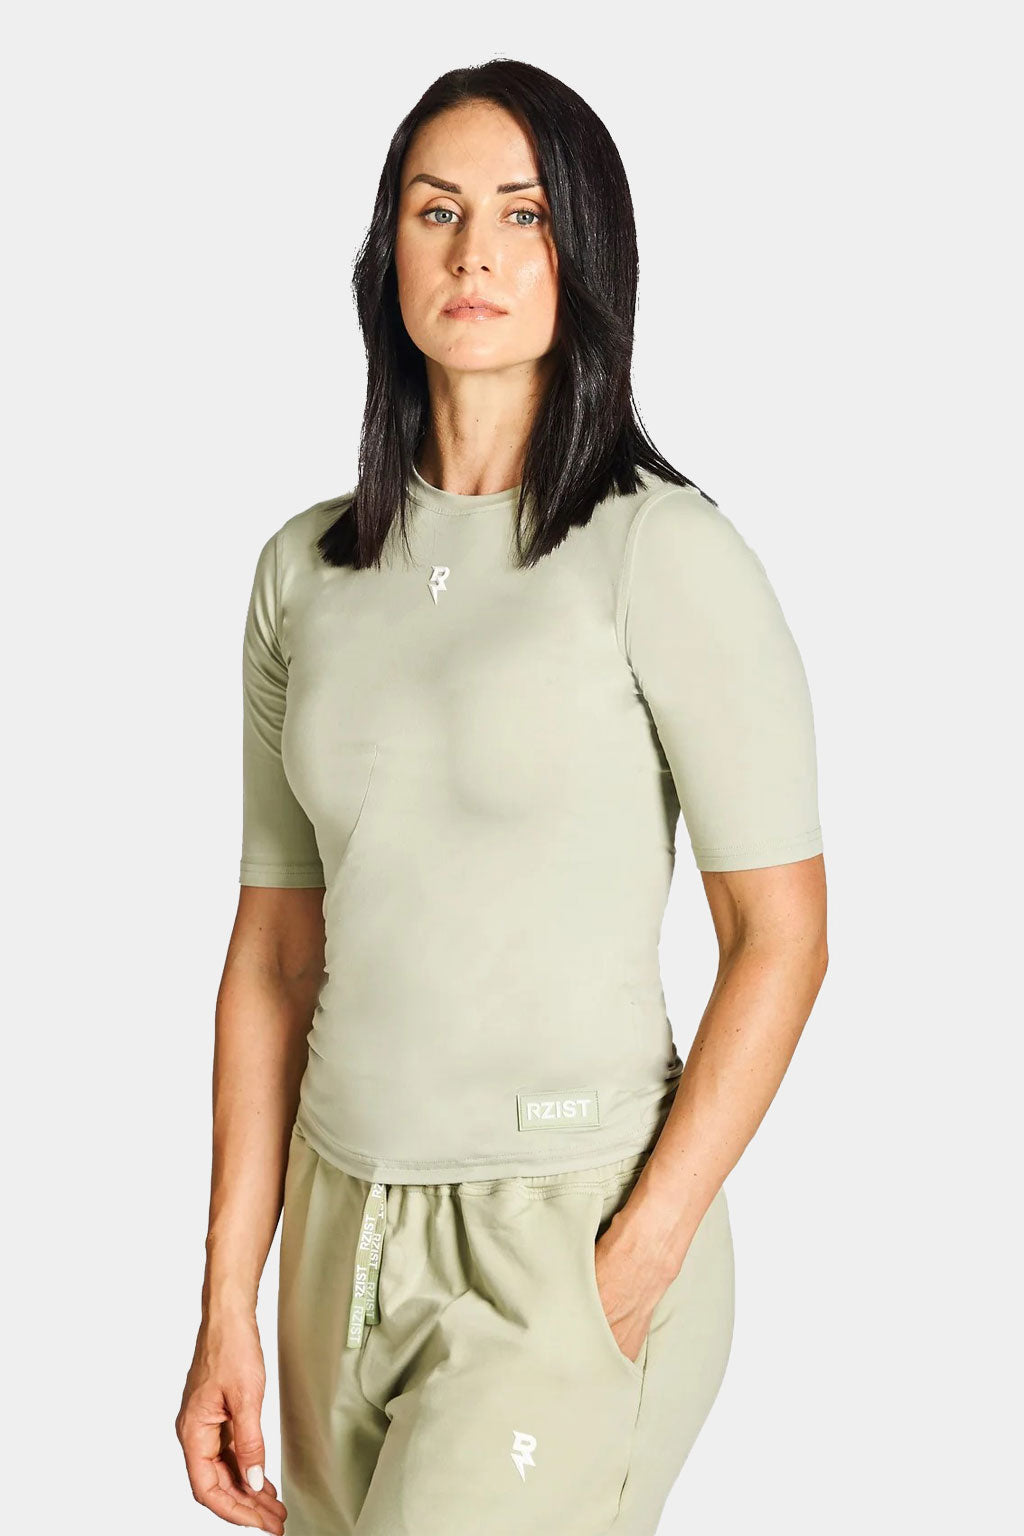 Rzist - Never Settle Women's Scallop Hem T-shirt